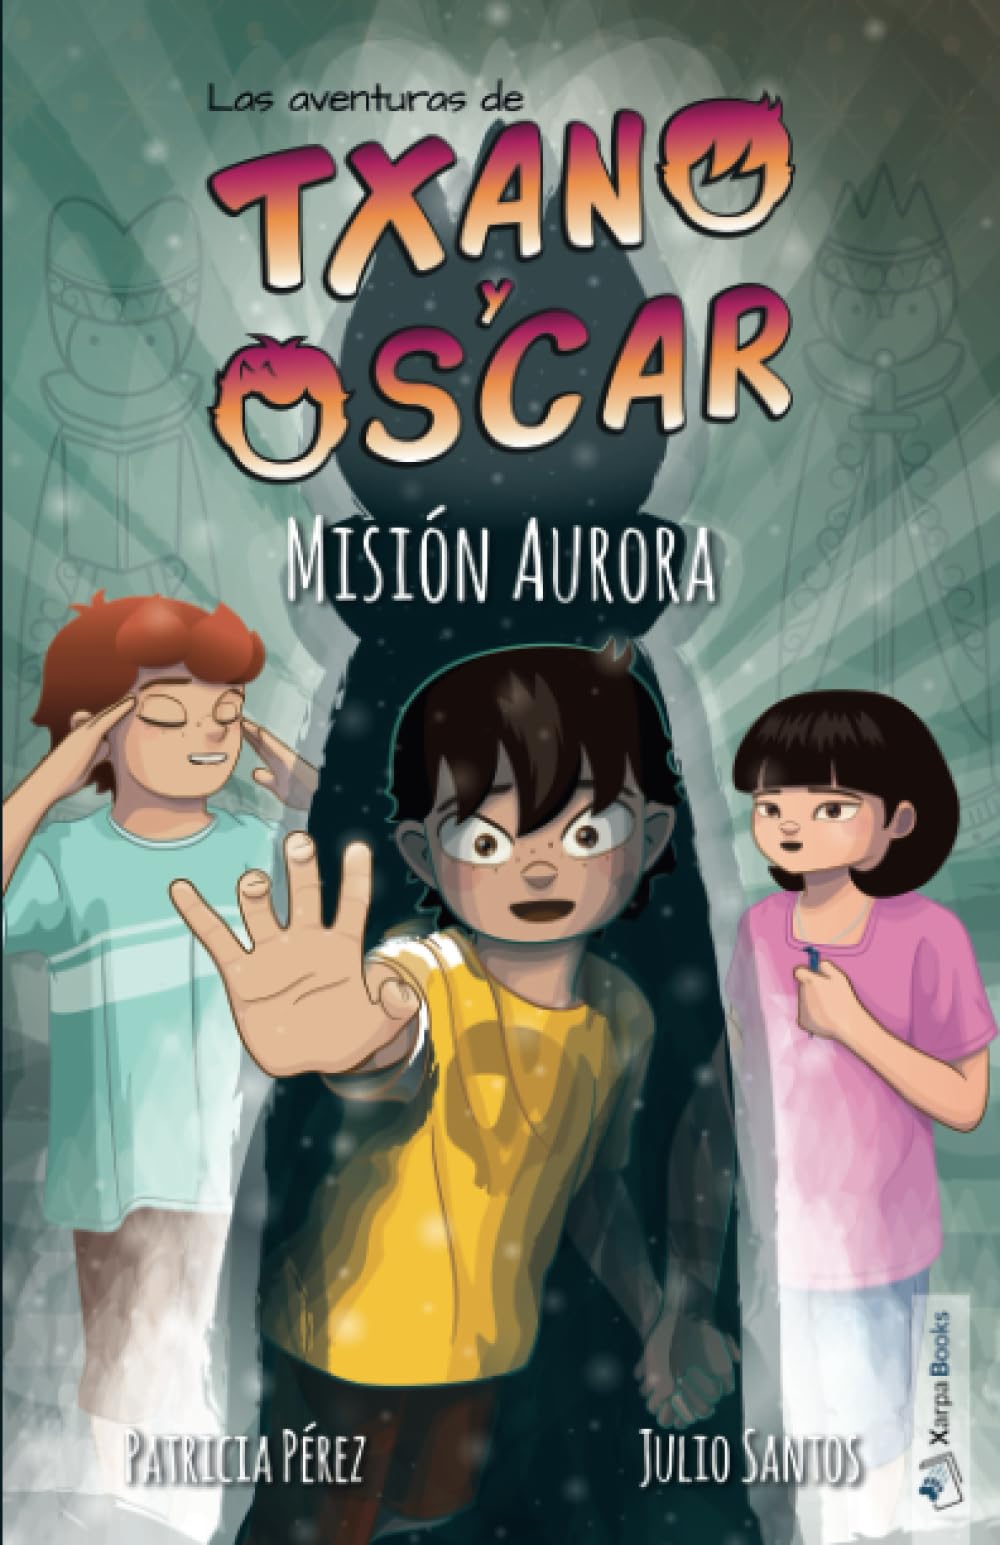 Libro: Las aventuras de Txano y Óscar - Misión Aurora por Julio Santos